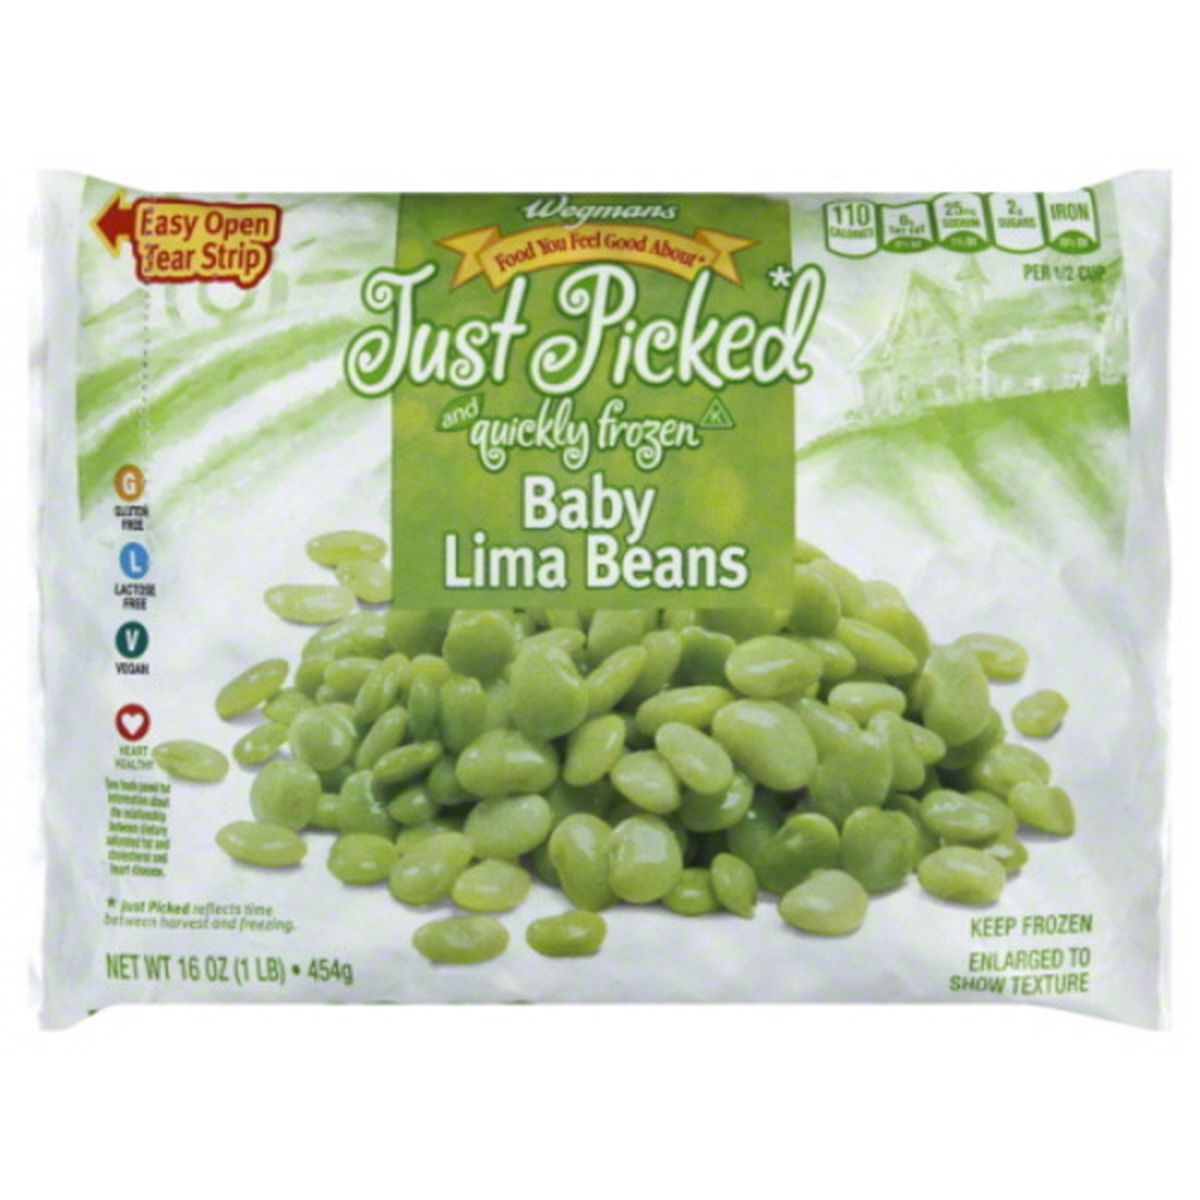 Calories in Wegmans Frozen Baby Lima Beans